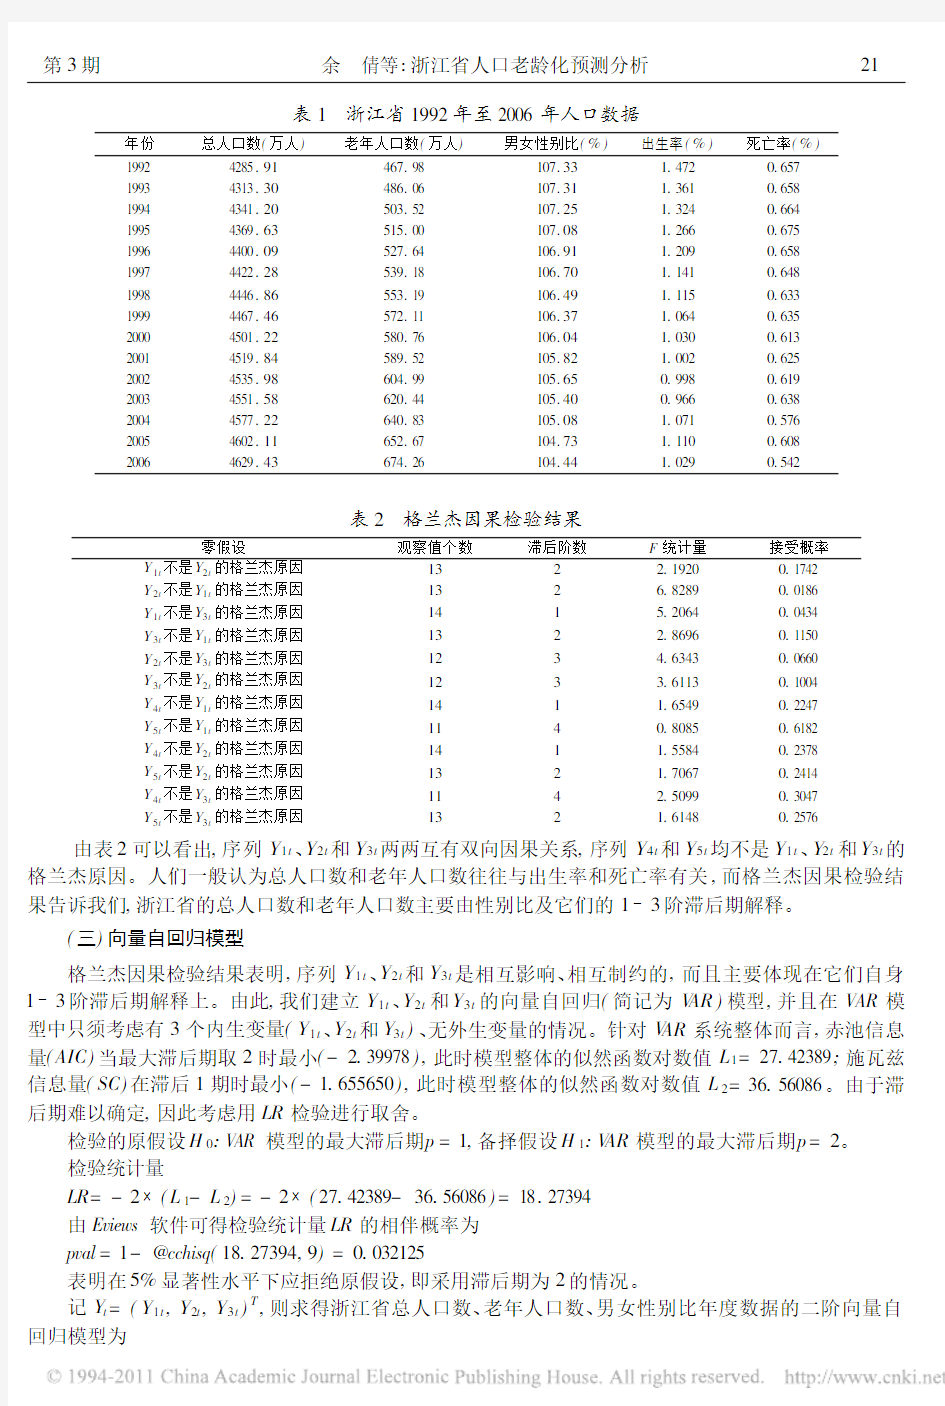 浙江省人口老龄化预测分析